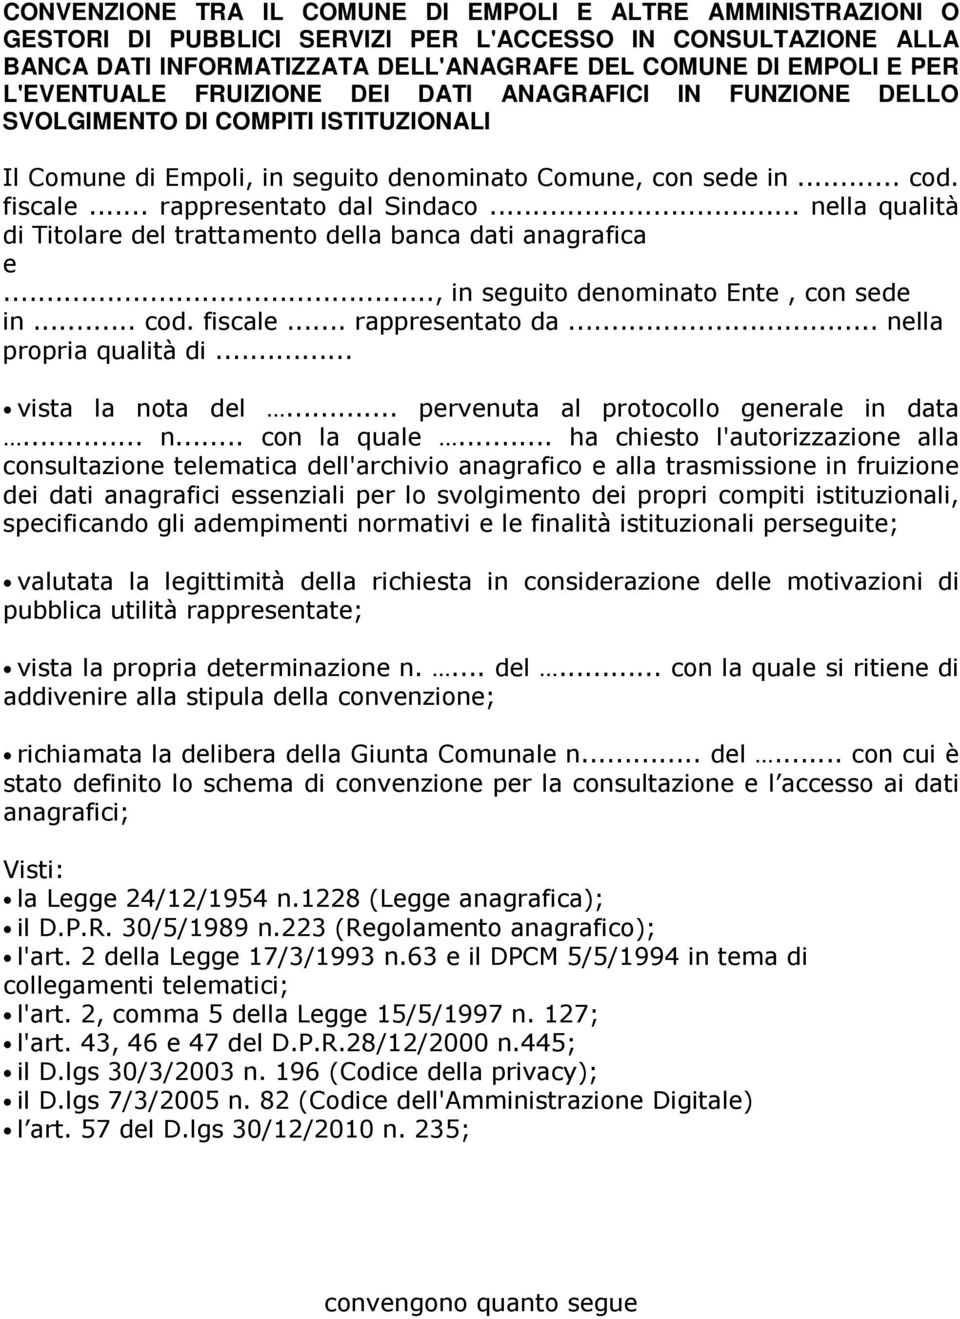 DATI ANAGRAFICI IN FUNZIONE DELLO SVOLGIMENTO DI COMPITI ISTITUZIONALI " %& ()*+(*+,-)+((./ 0 12345*-*+,.